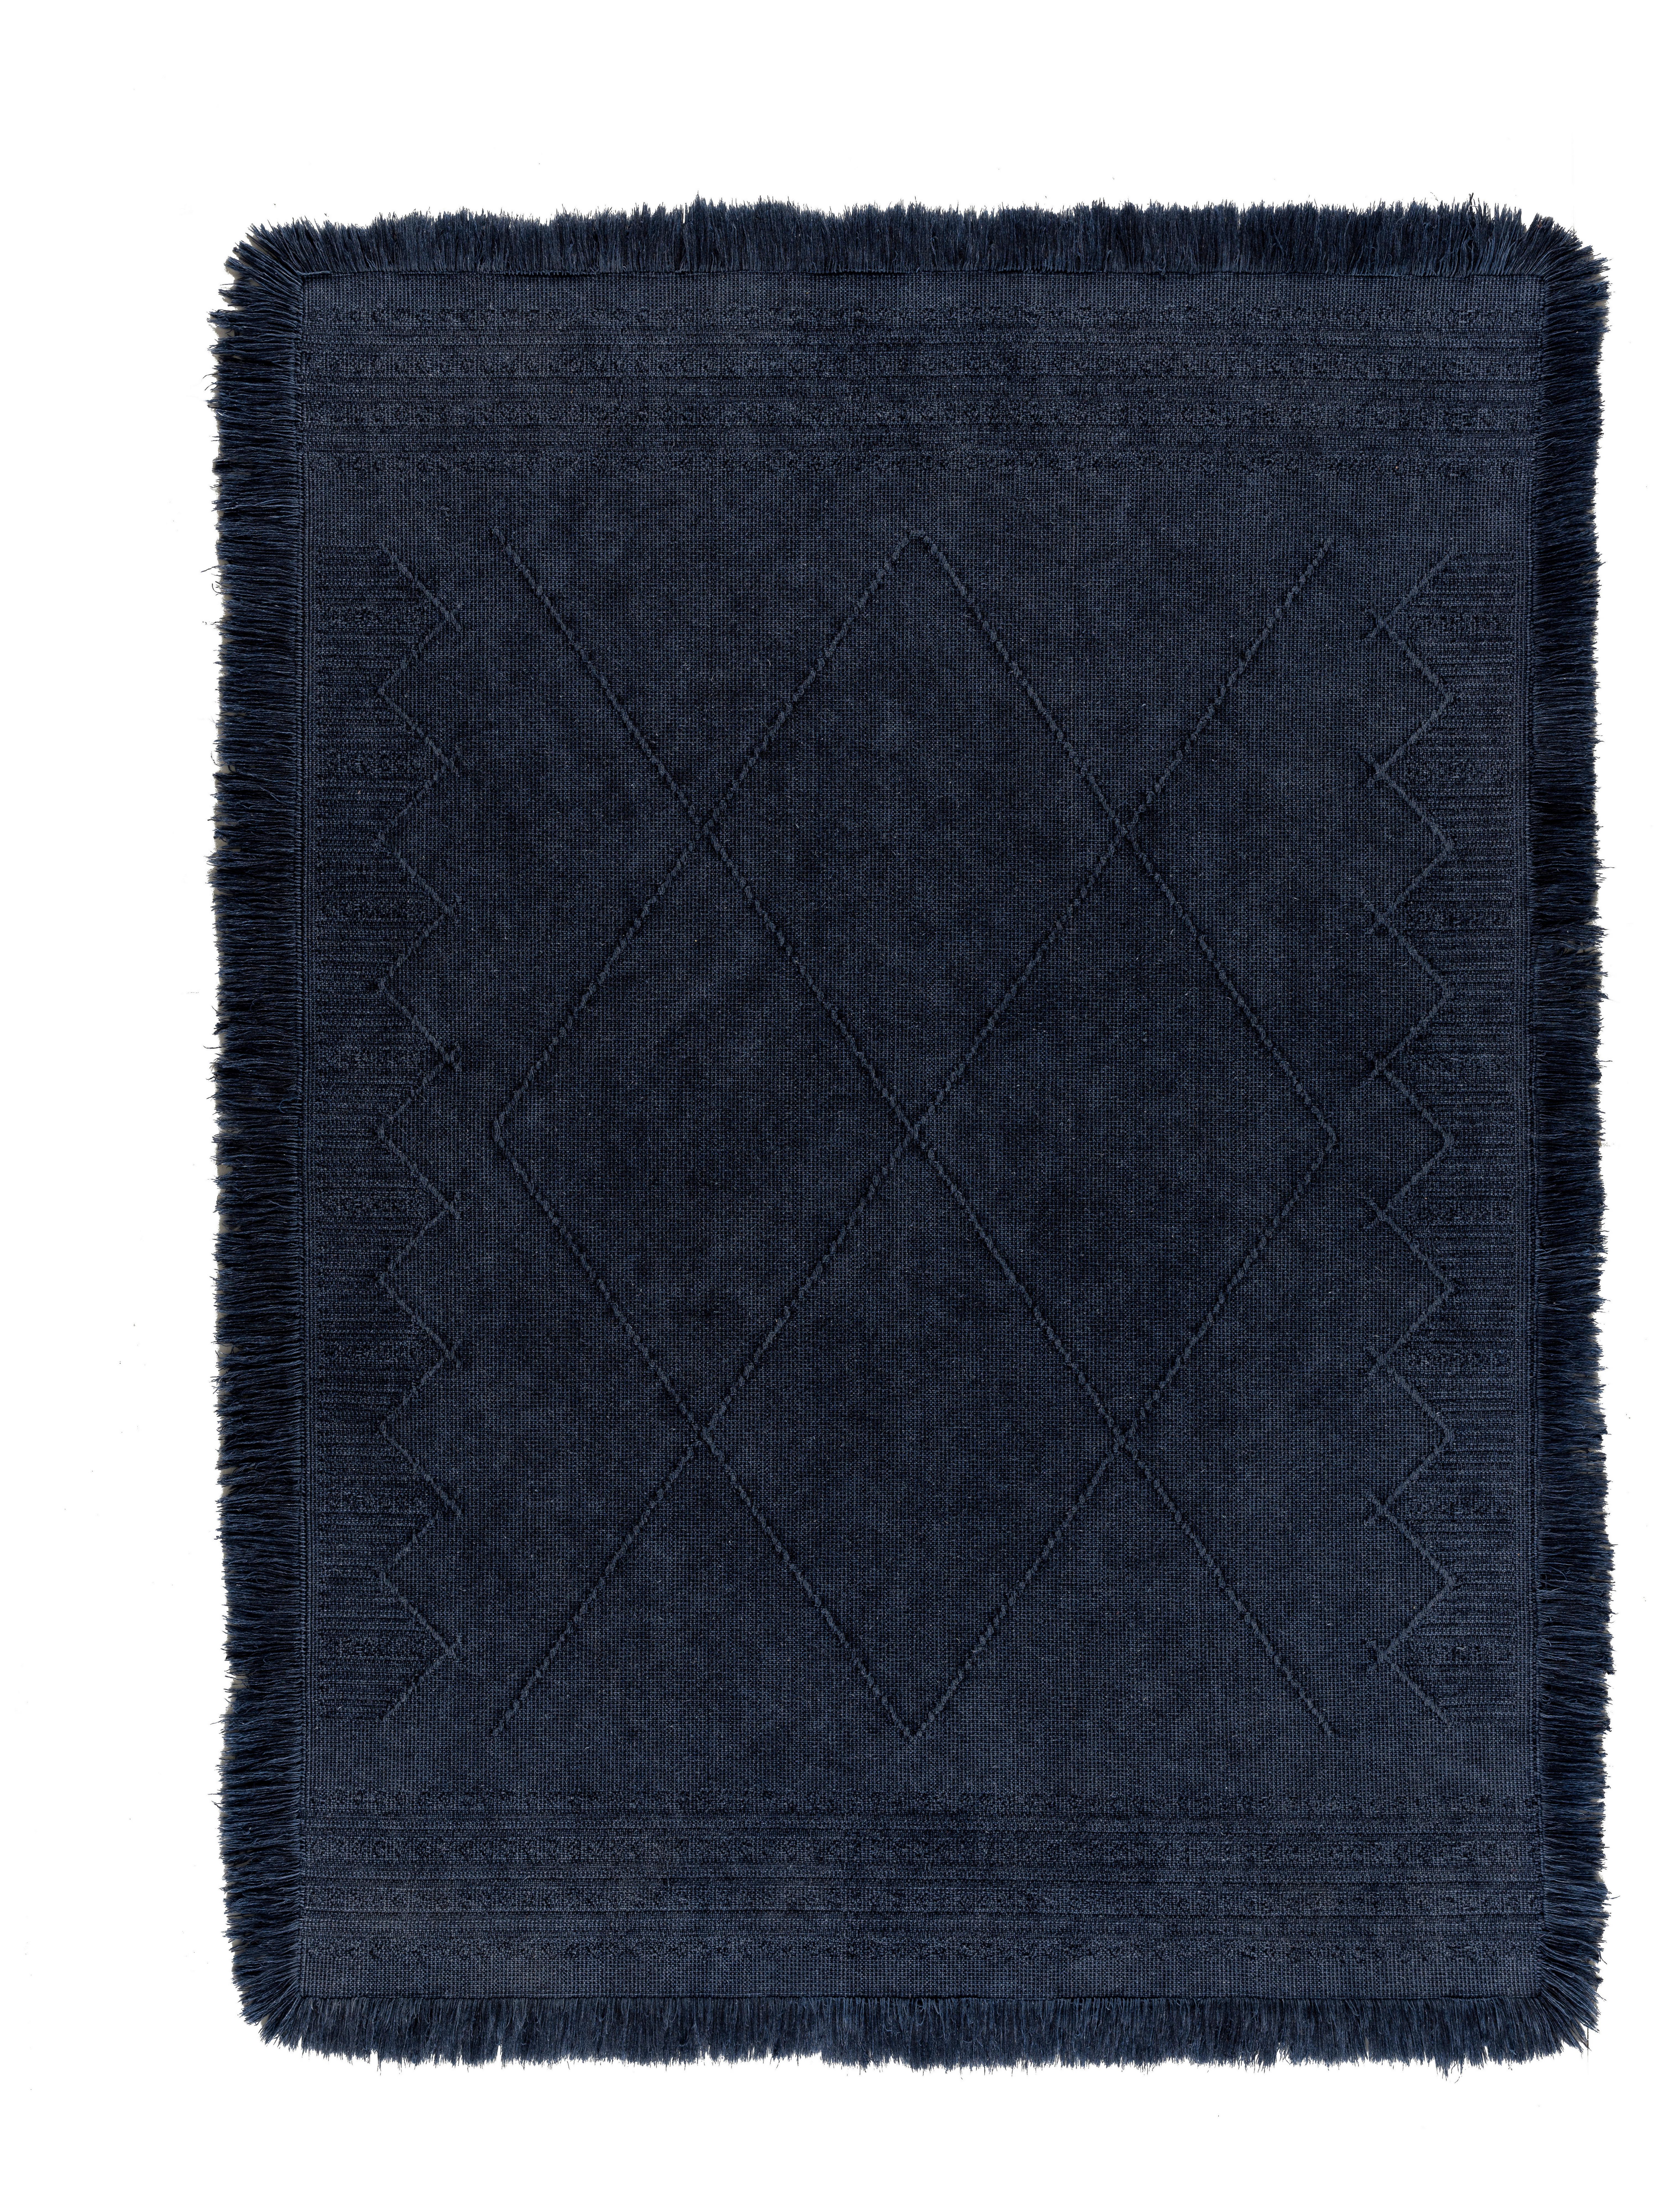 Ročno Tkana Preproga Monaco 1 - temno modra, tekstil (80/150cm) - Modern Living